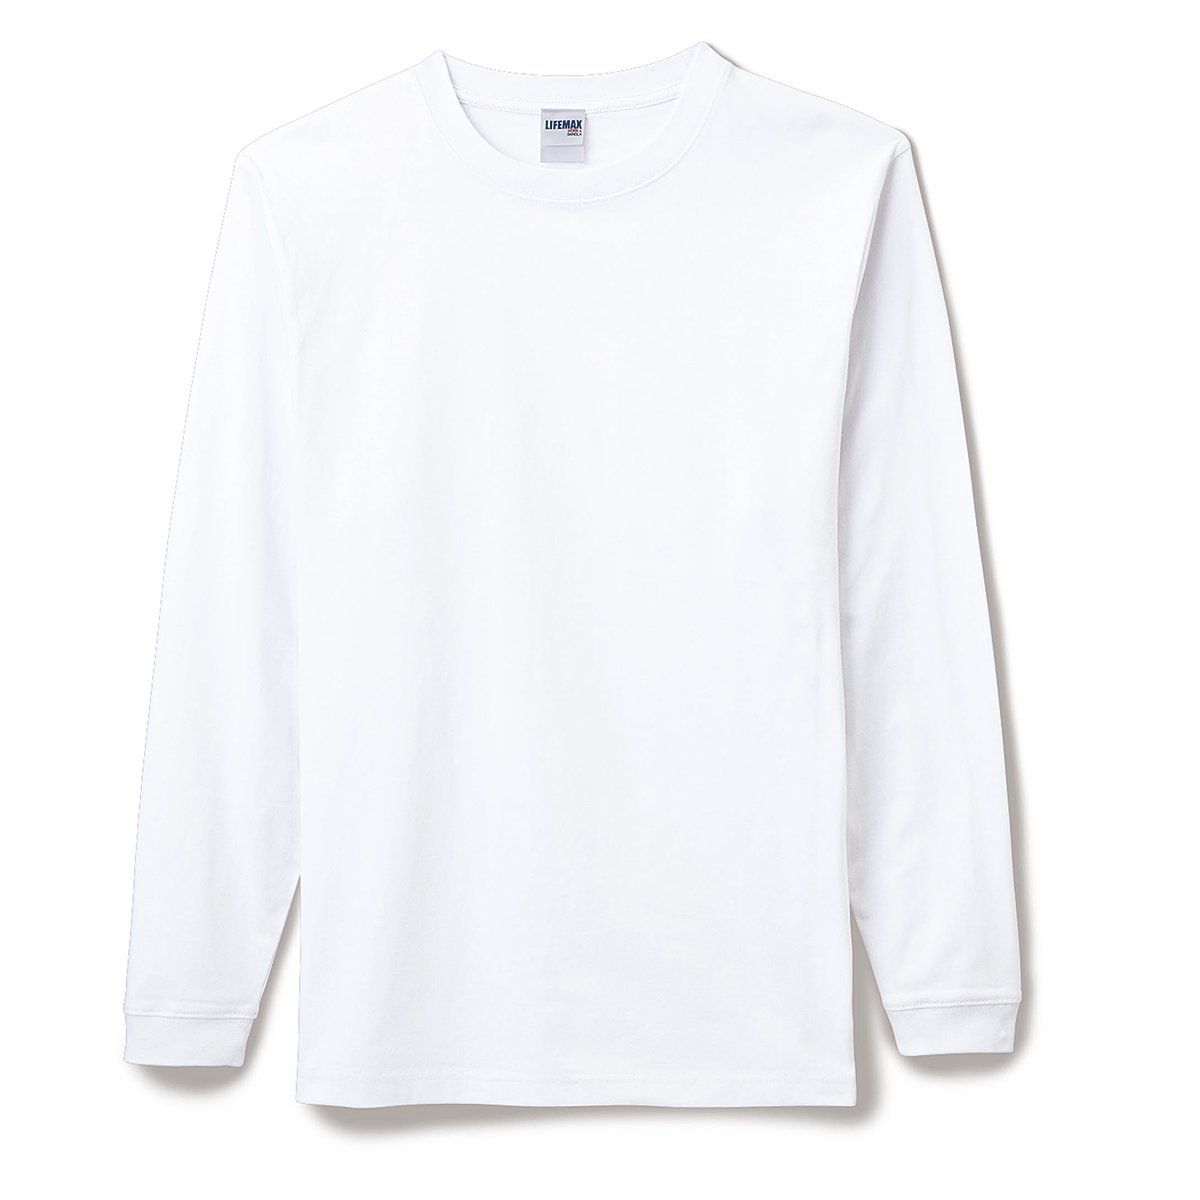 8,400円オフホワイト 20SS スケルトングラフィックロングスリーブTシャツMサイズ